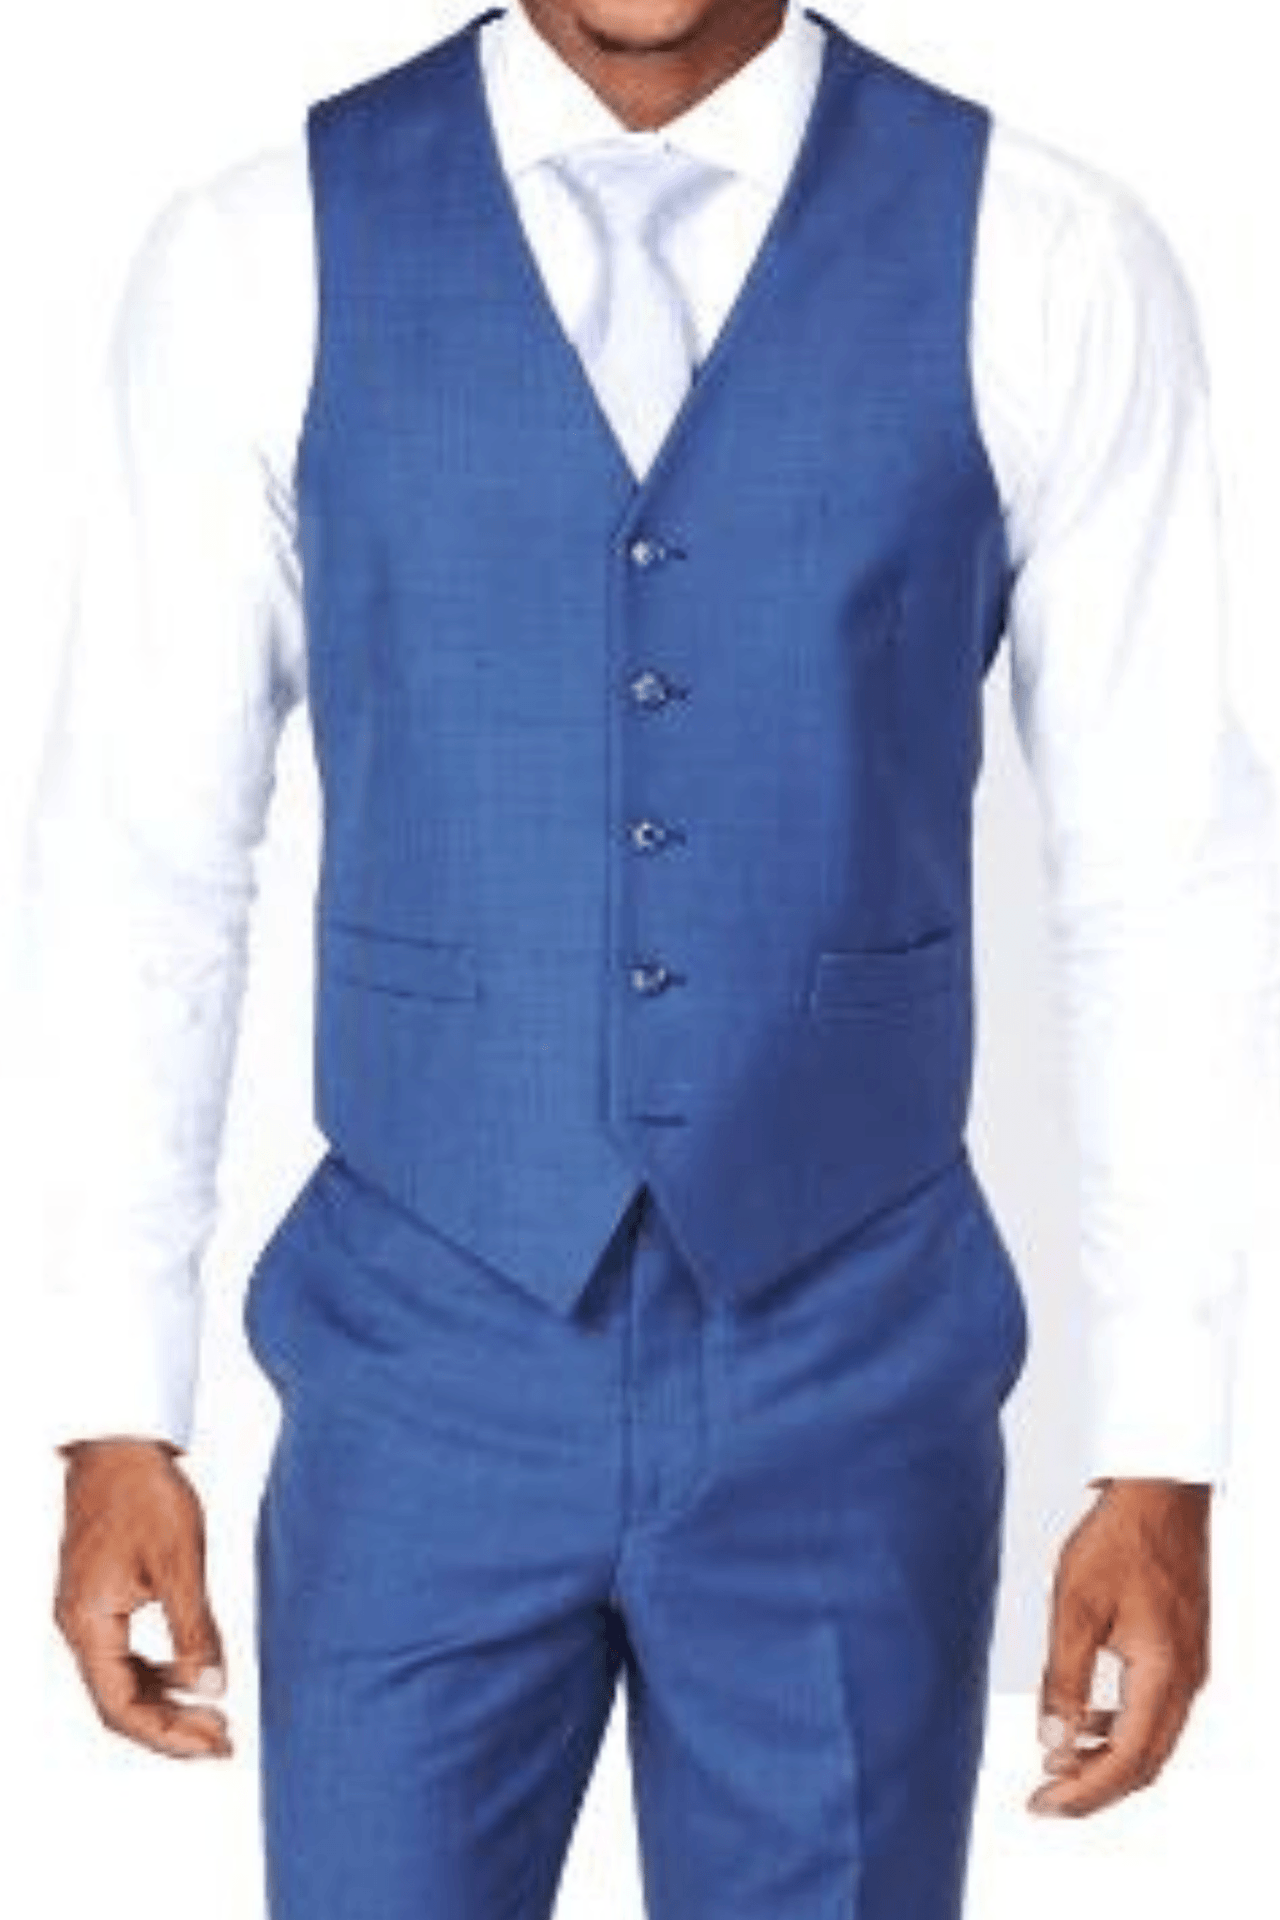 blue shirt black vest  Black suit blue shirt, Blue dress vest